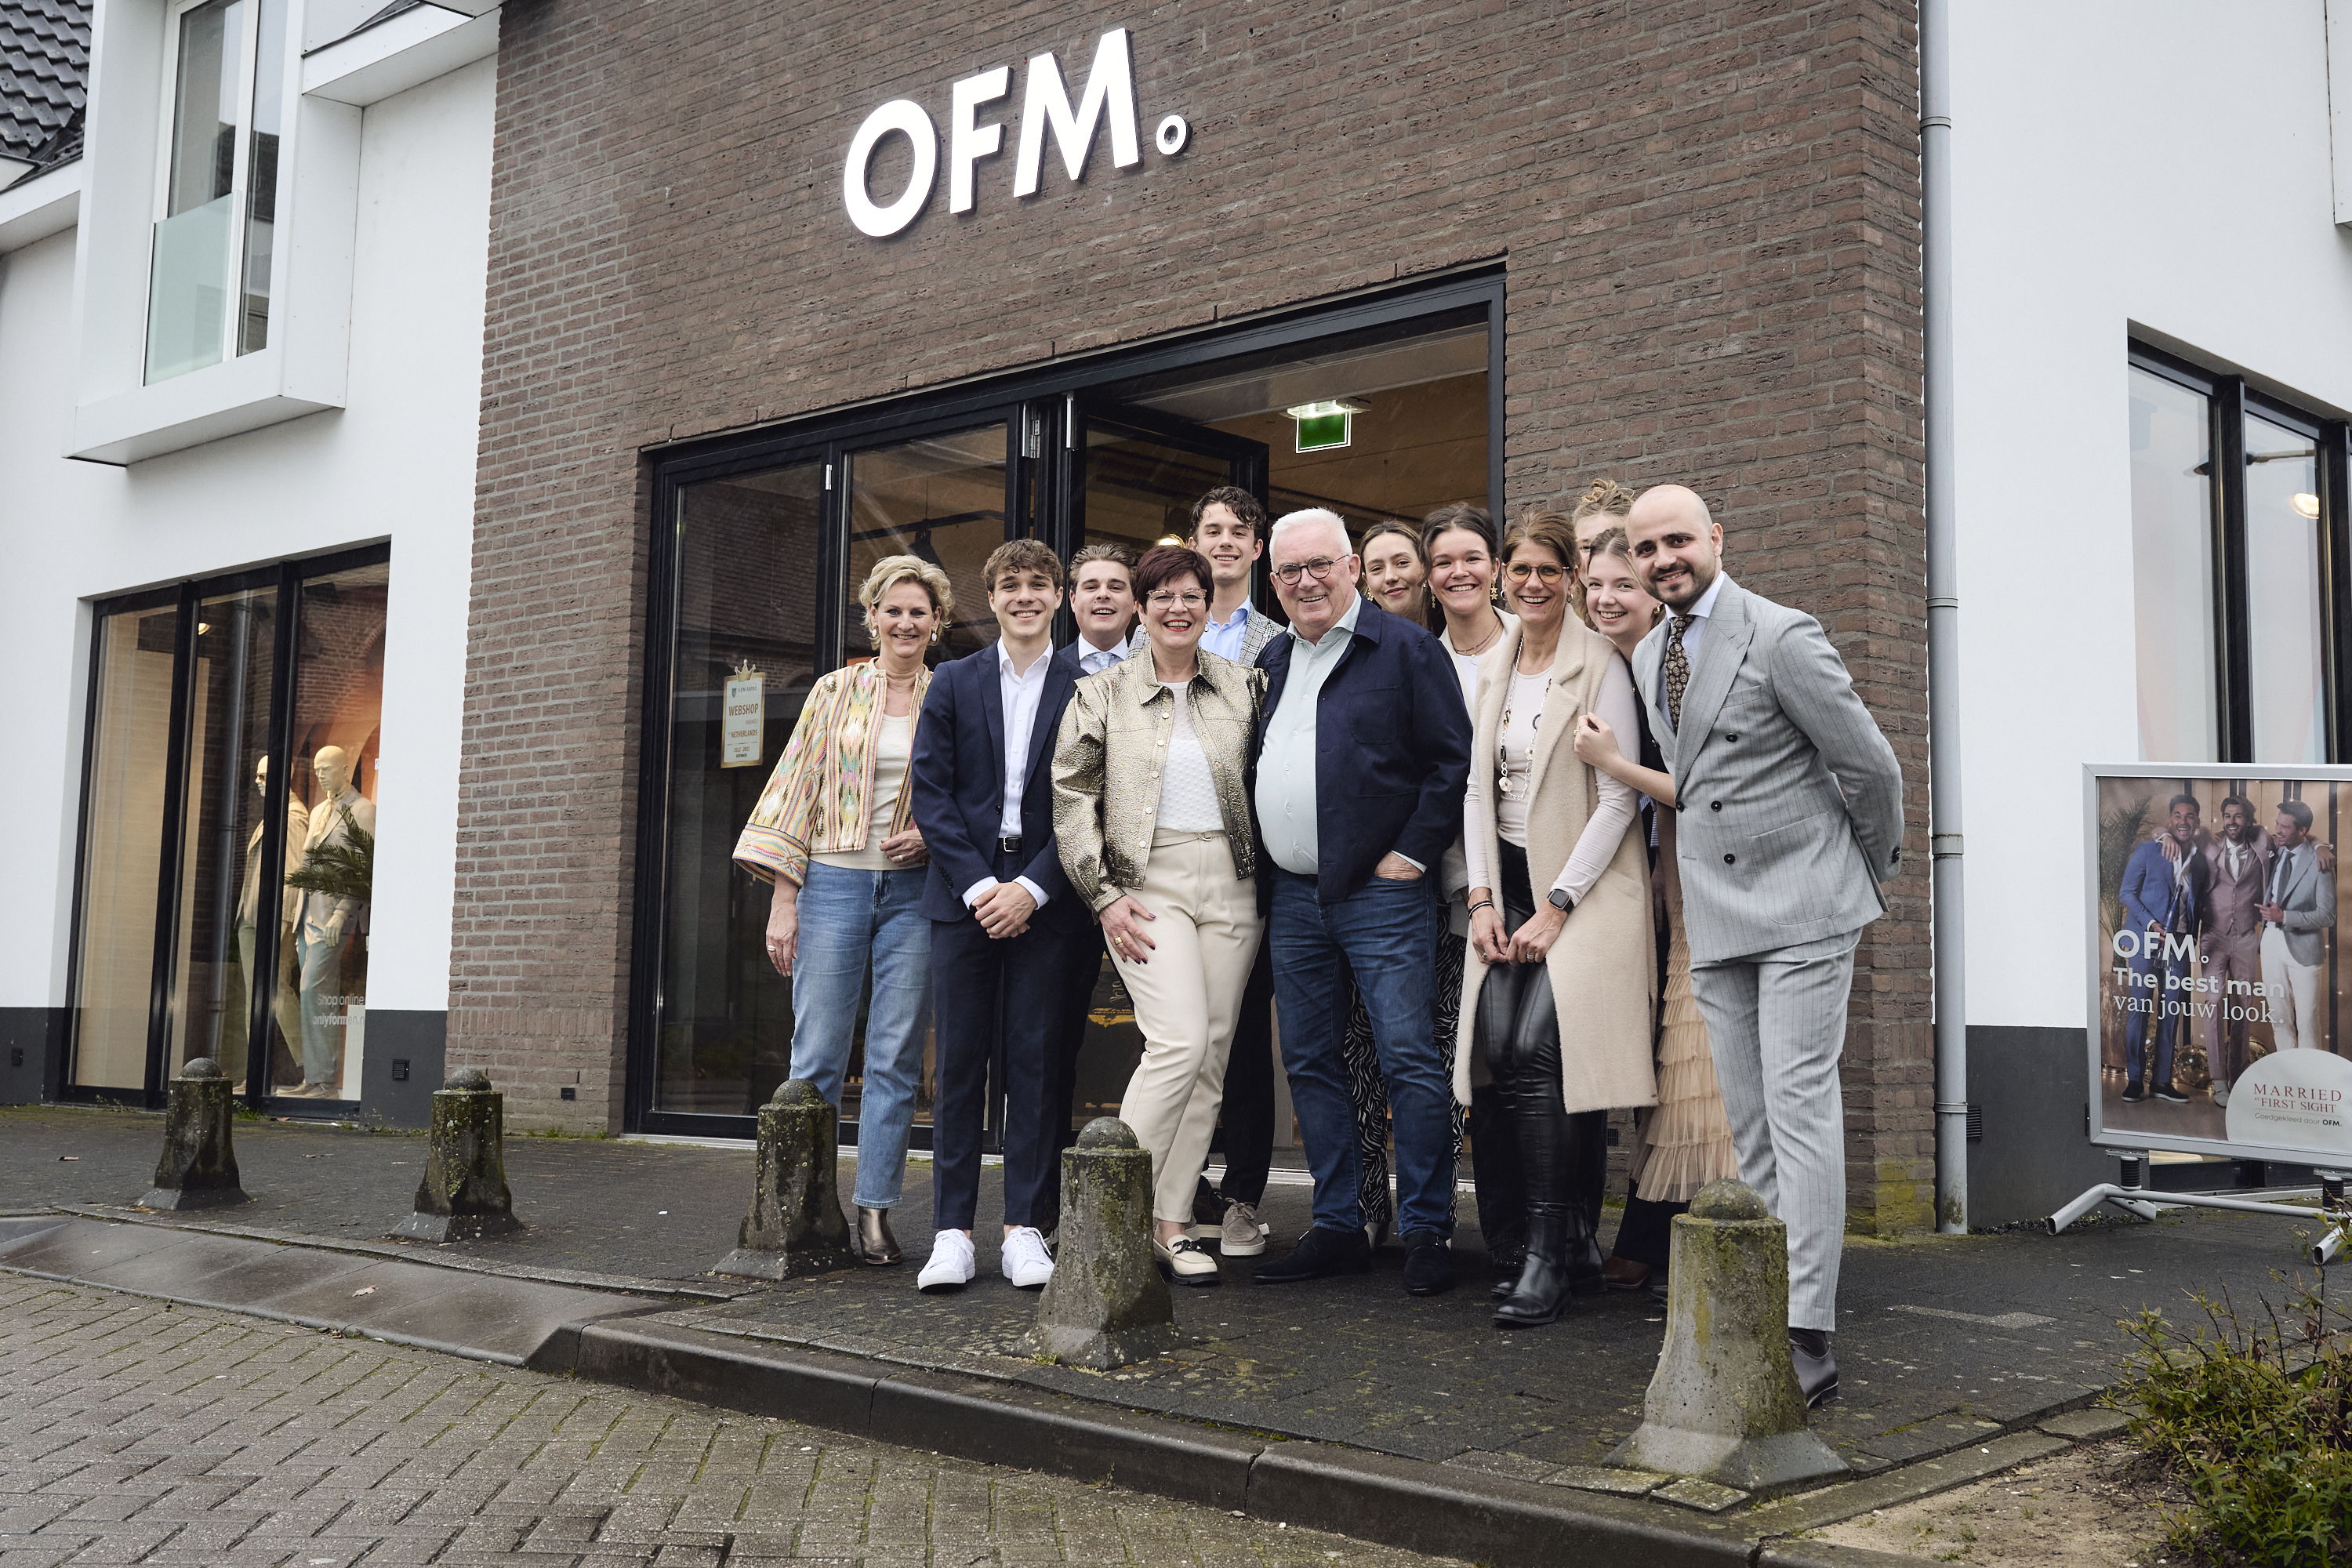 Modespecialiste Marja met Piet en team OFM.